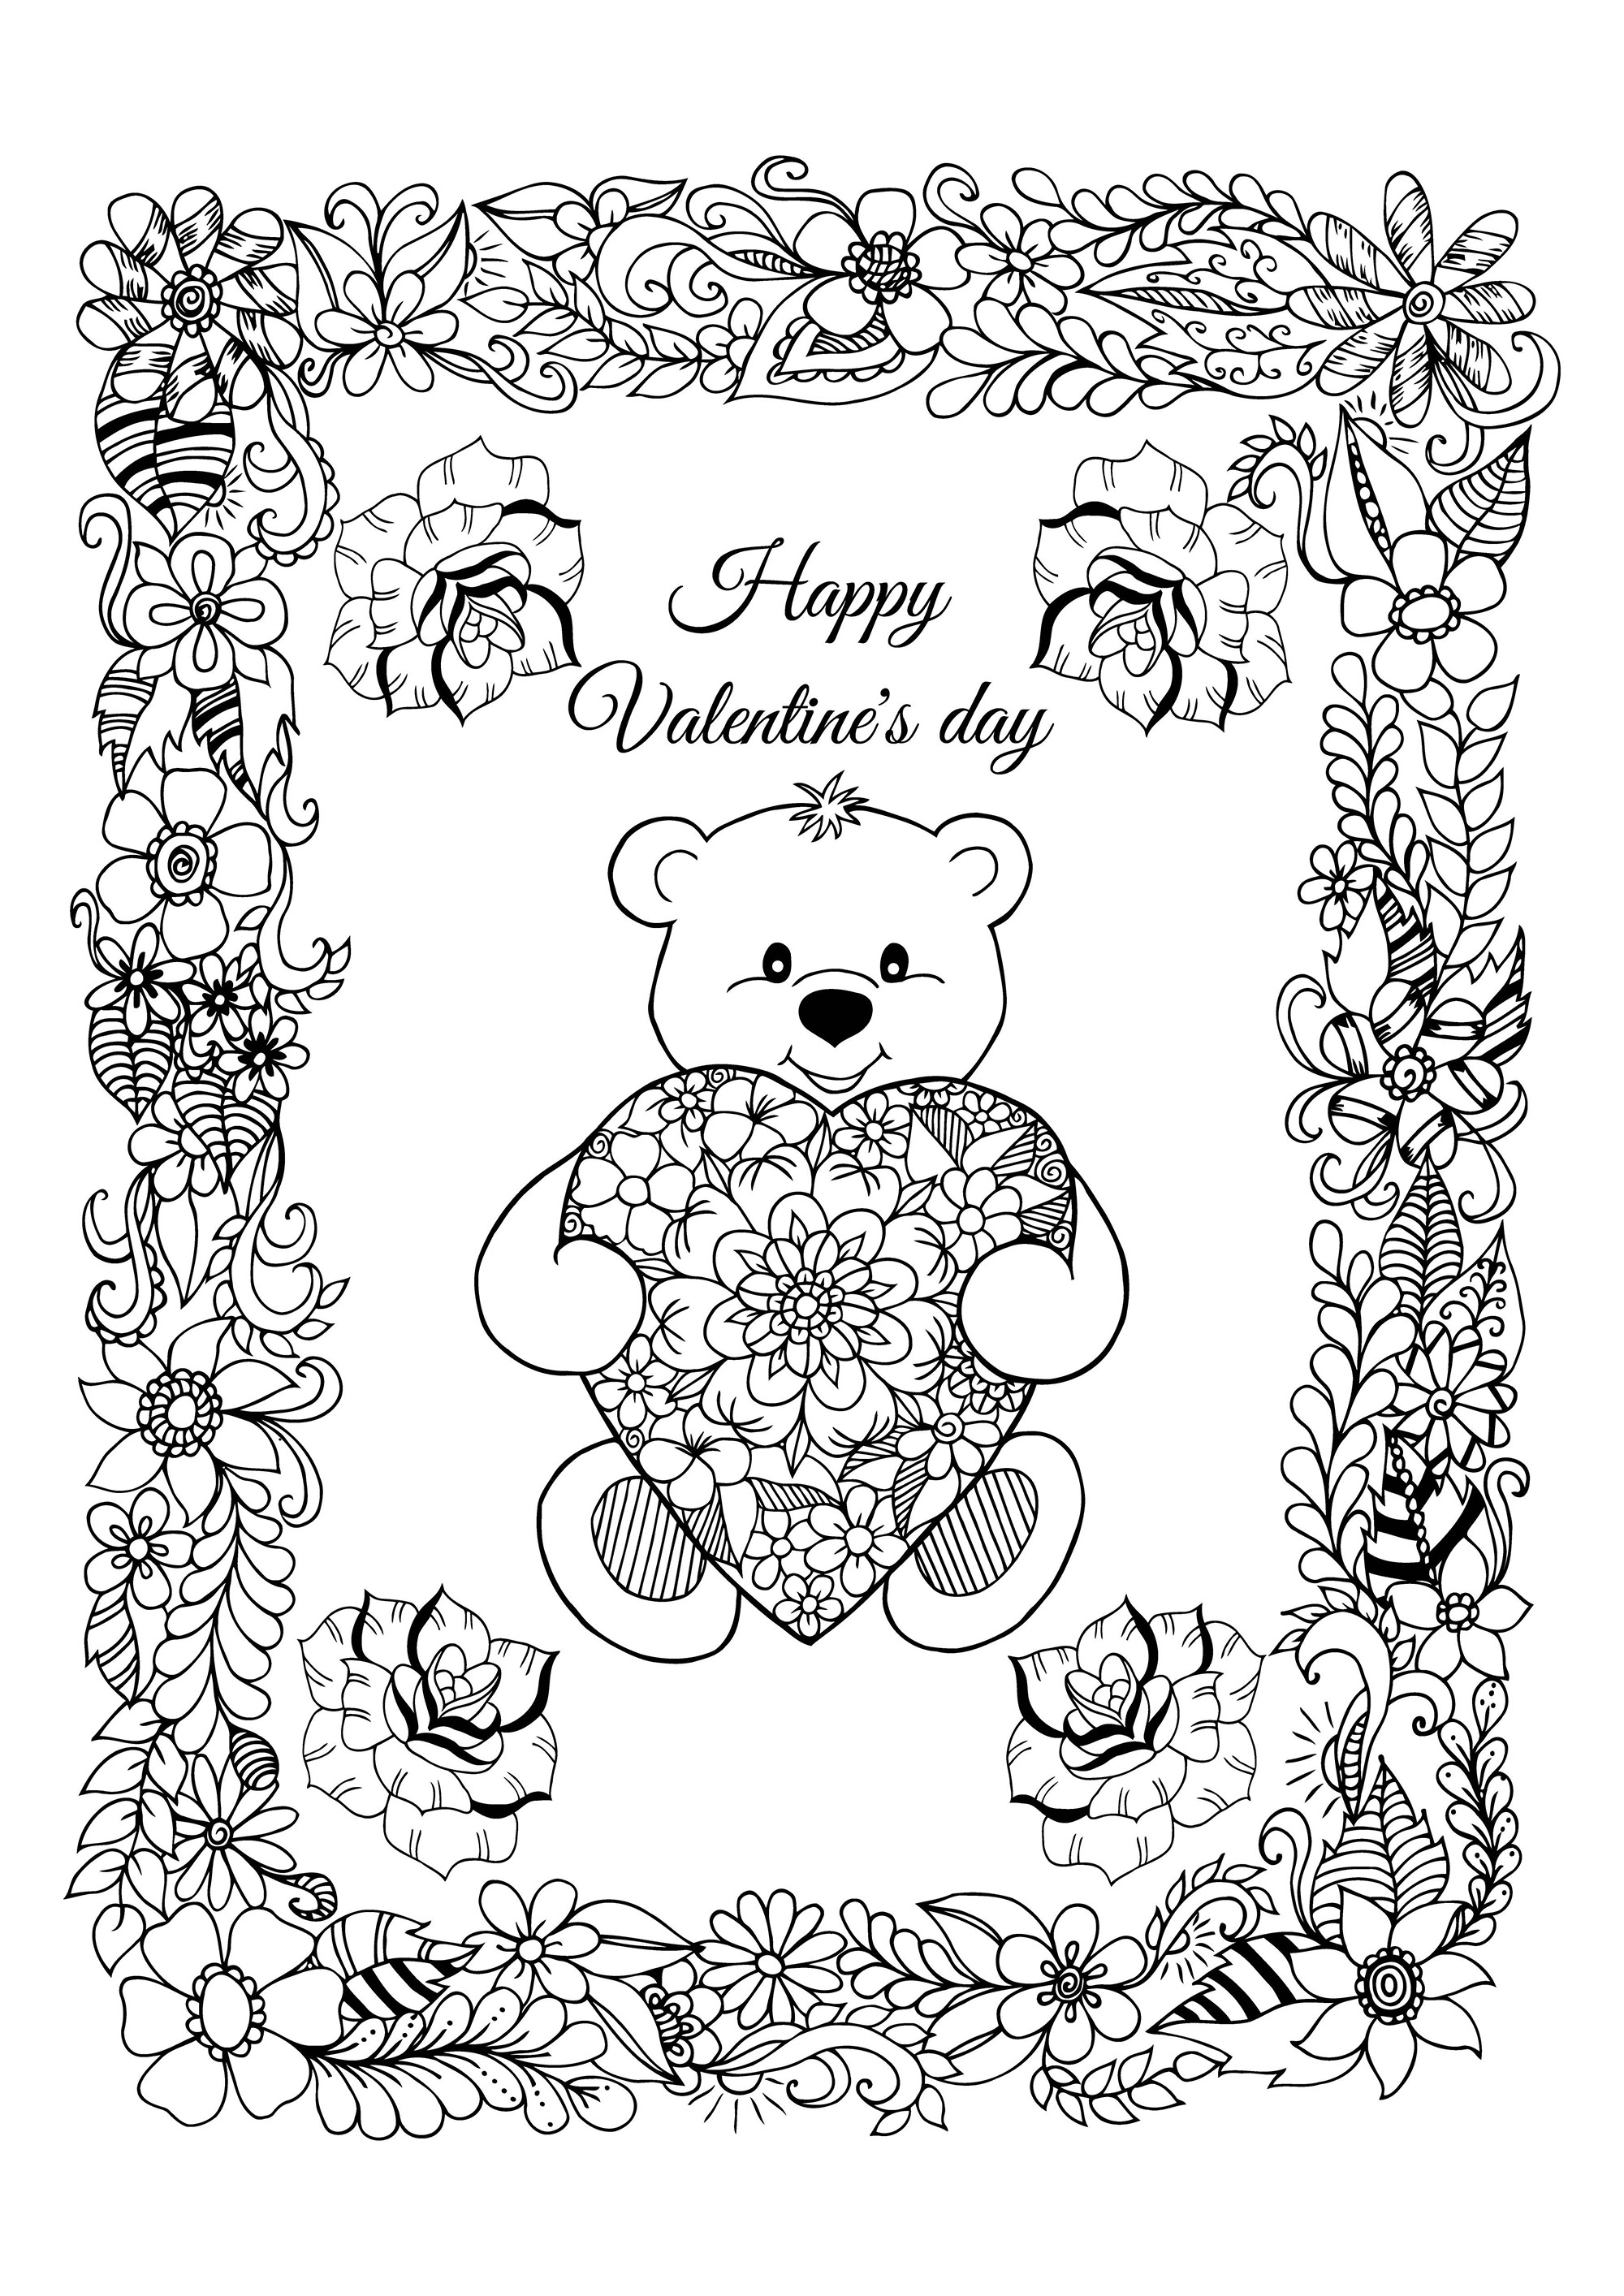 Um bonito cartão do Dia dos Namorados para colorir, com um ursinho giro a usar um coração com bonitos padrões e uma bonita moldura cheia de flores, Artista : Maritel67   Fonte : 123rf